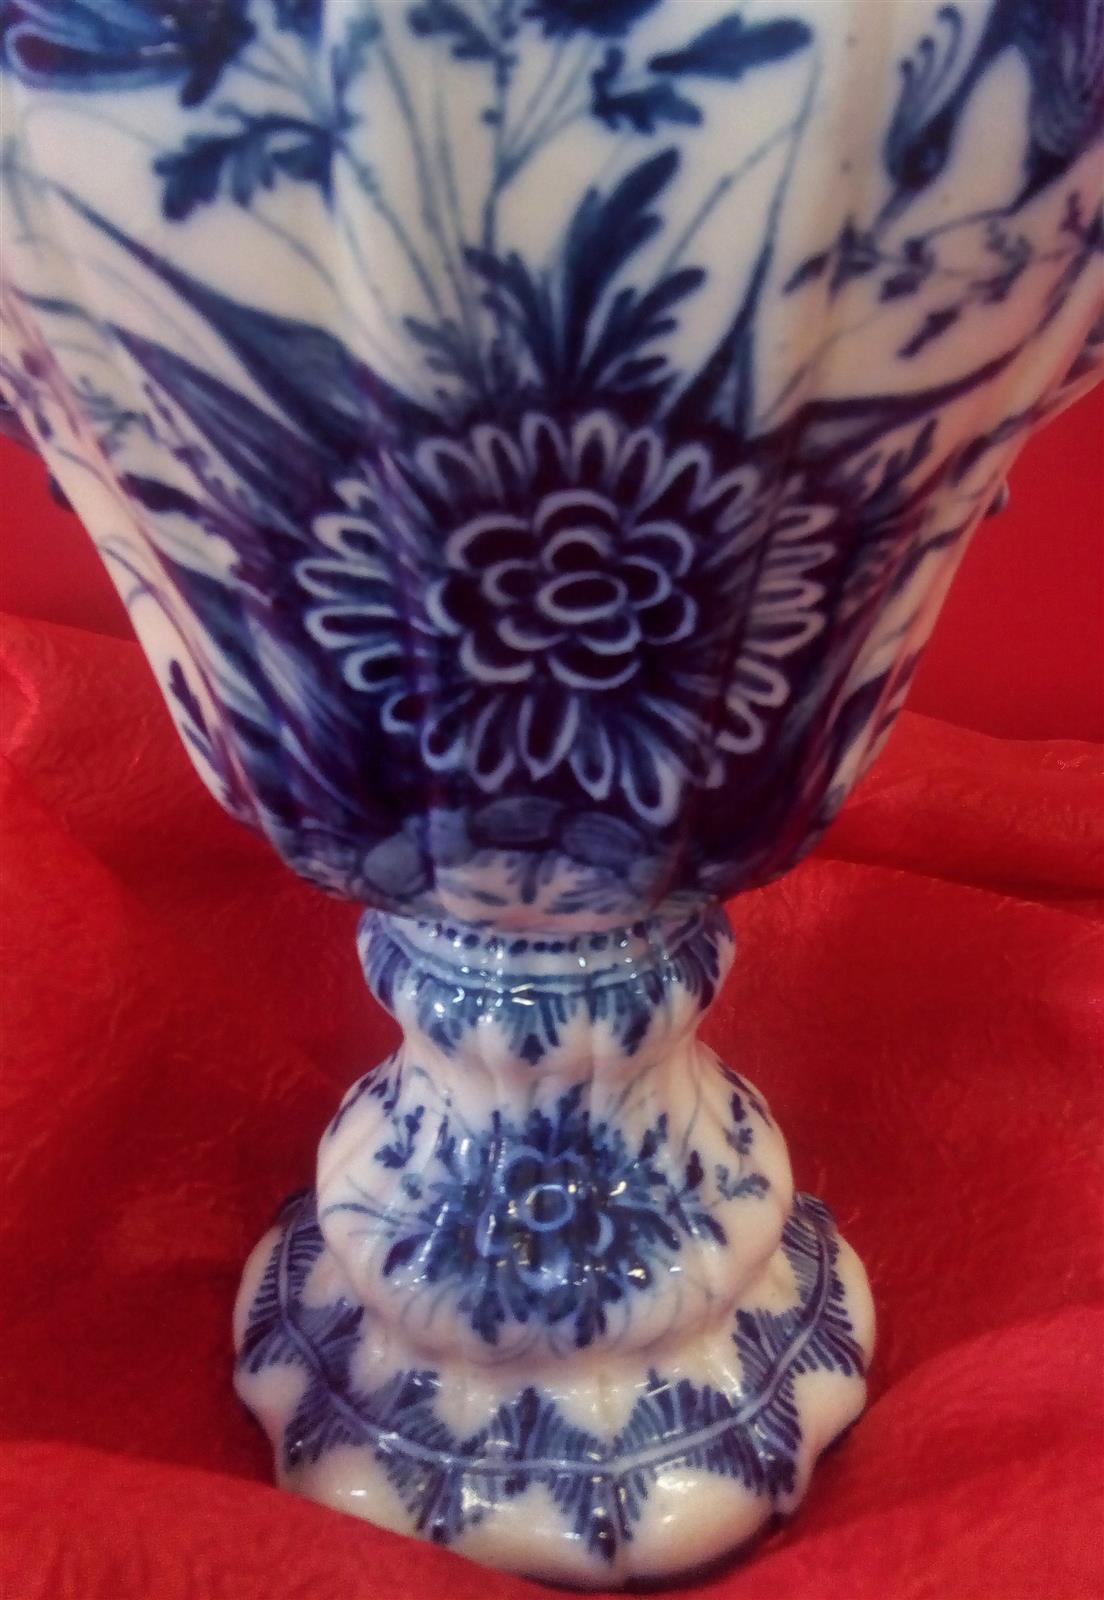 Vaso con tappo in ceramica decorato in blu